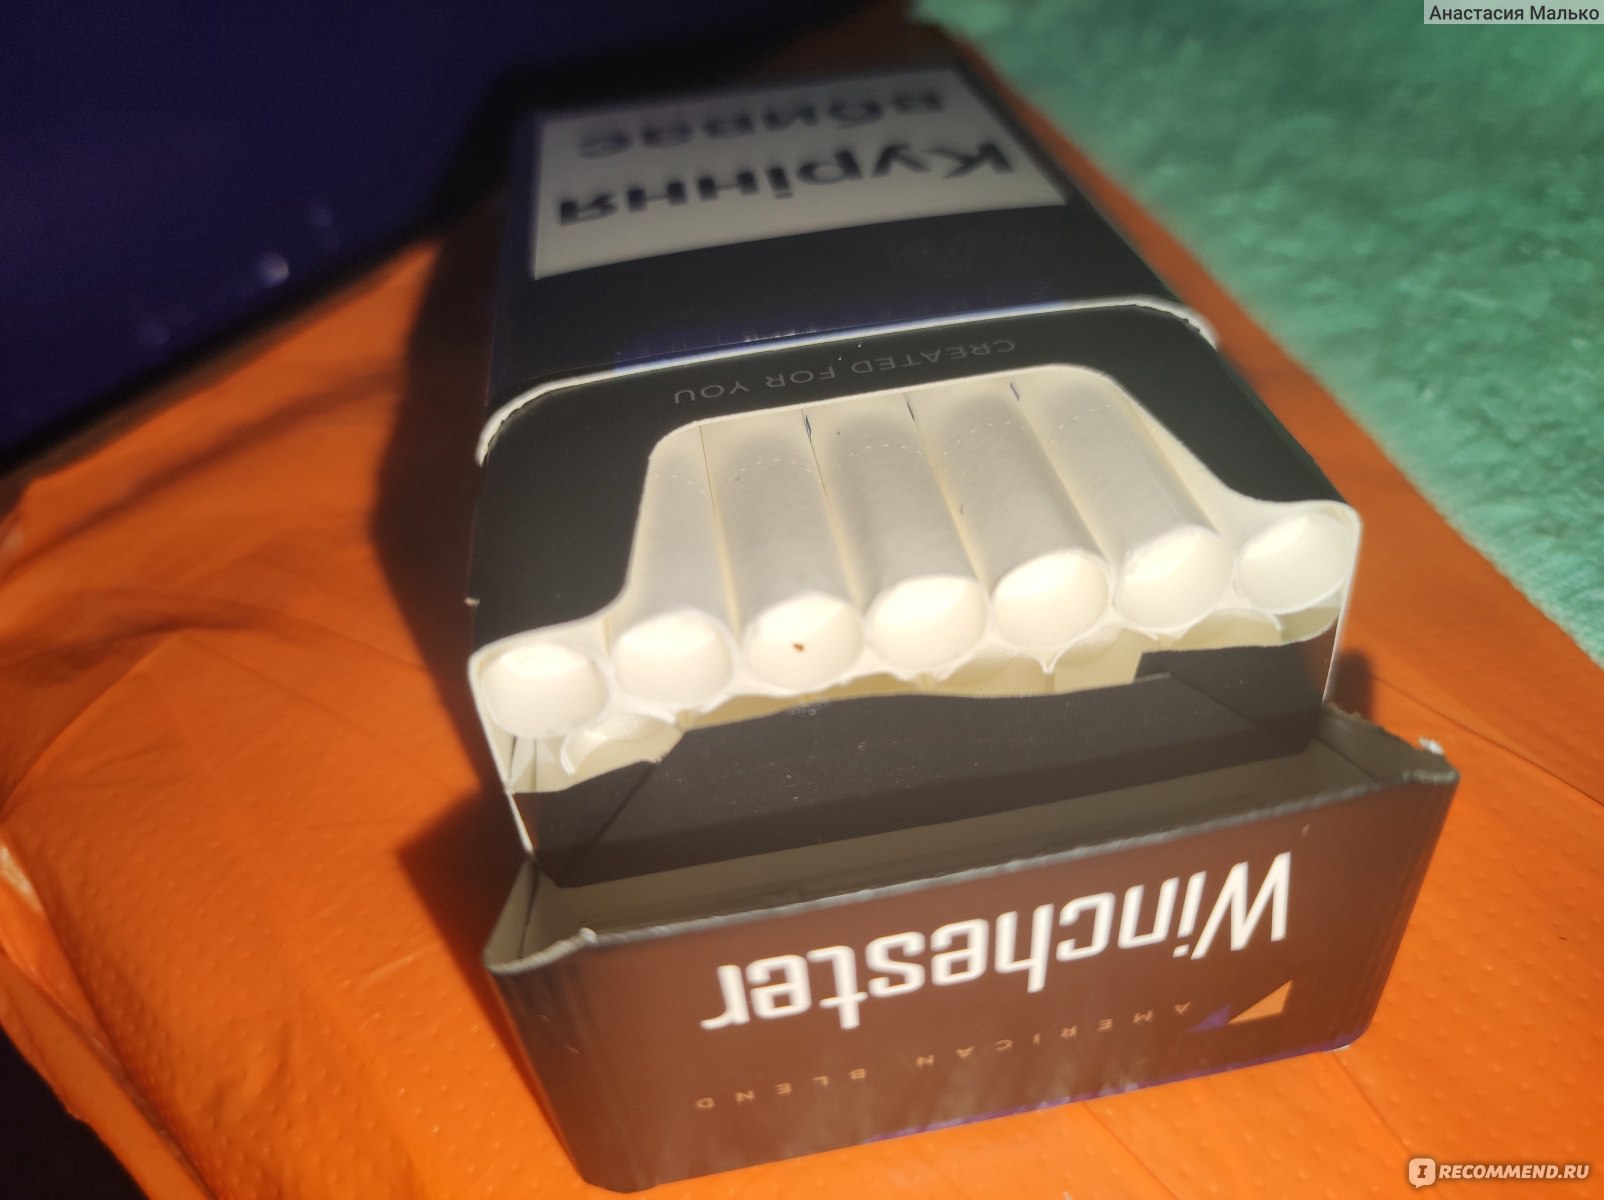 Сигареты Winchester Compact Silver - «Не плохие сигареты из не высокой ценовой категории »